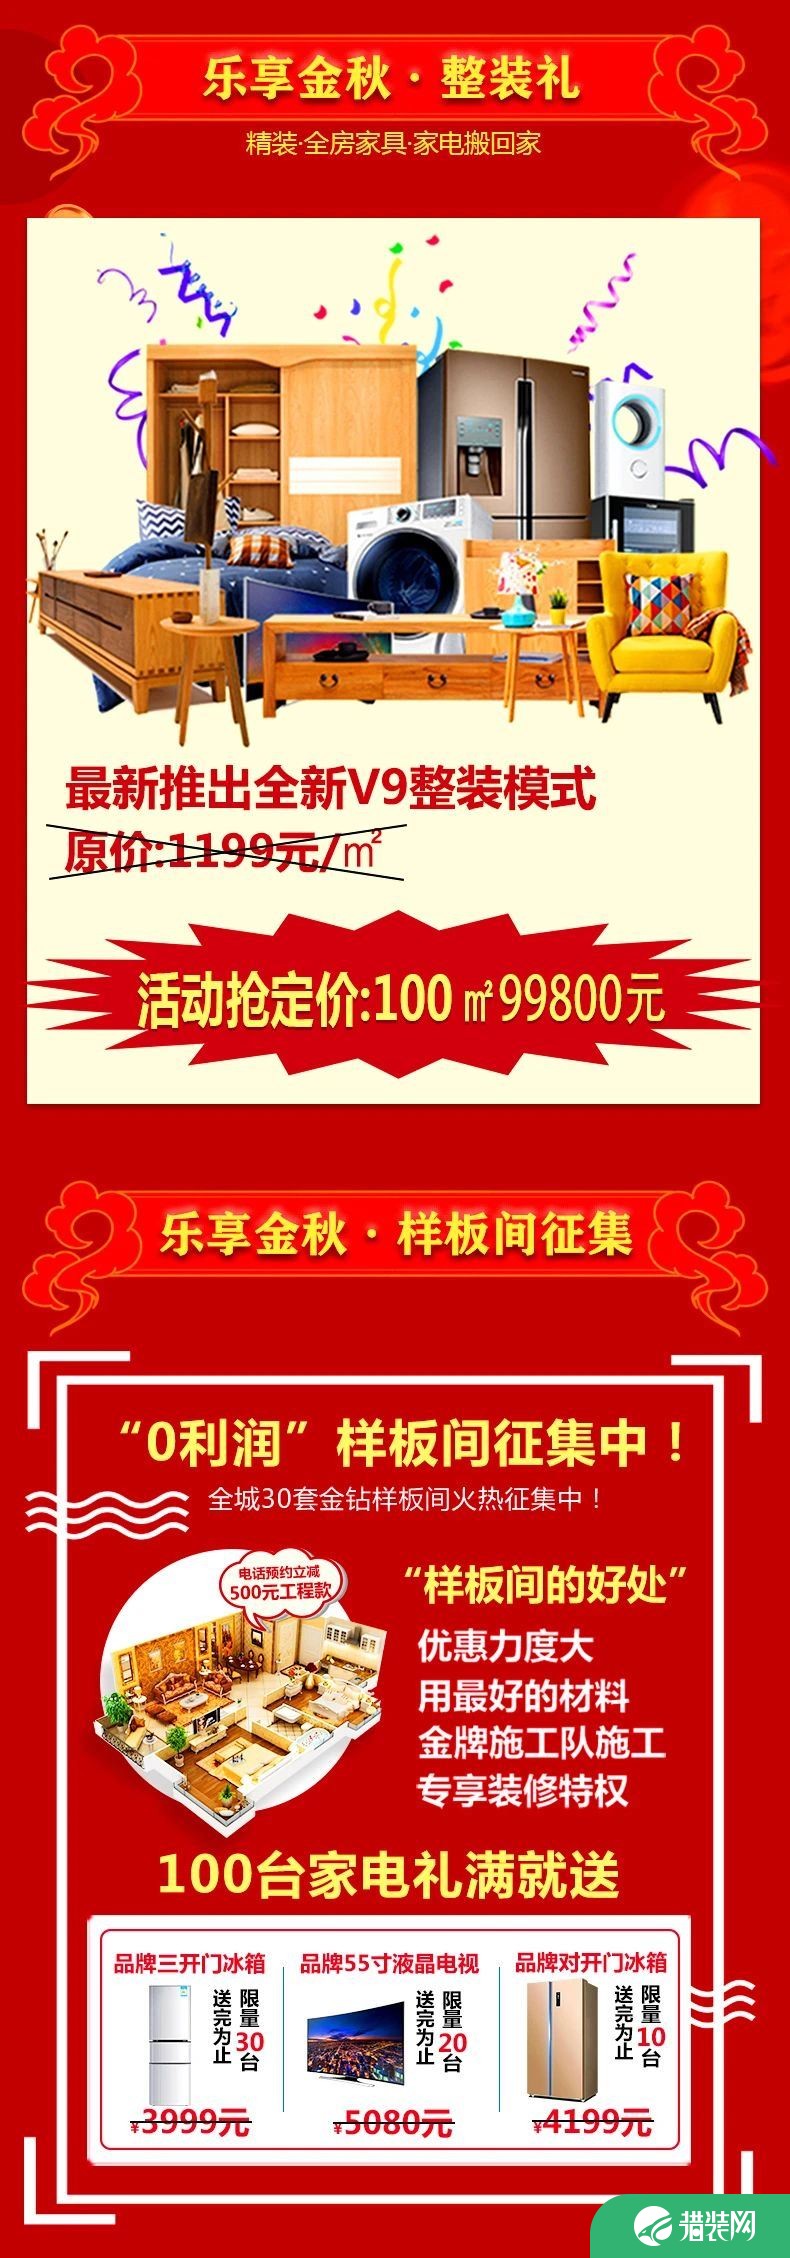 郑州龙记万家享金秋感恩季 集团让利6600万回馈客户